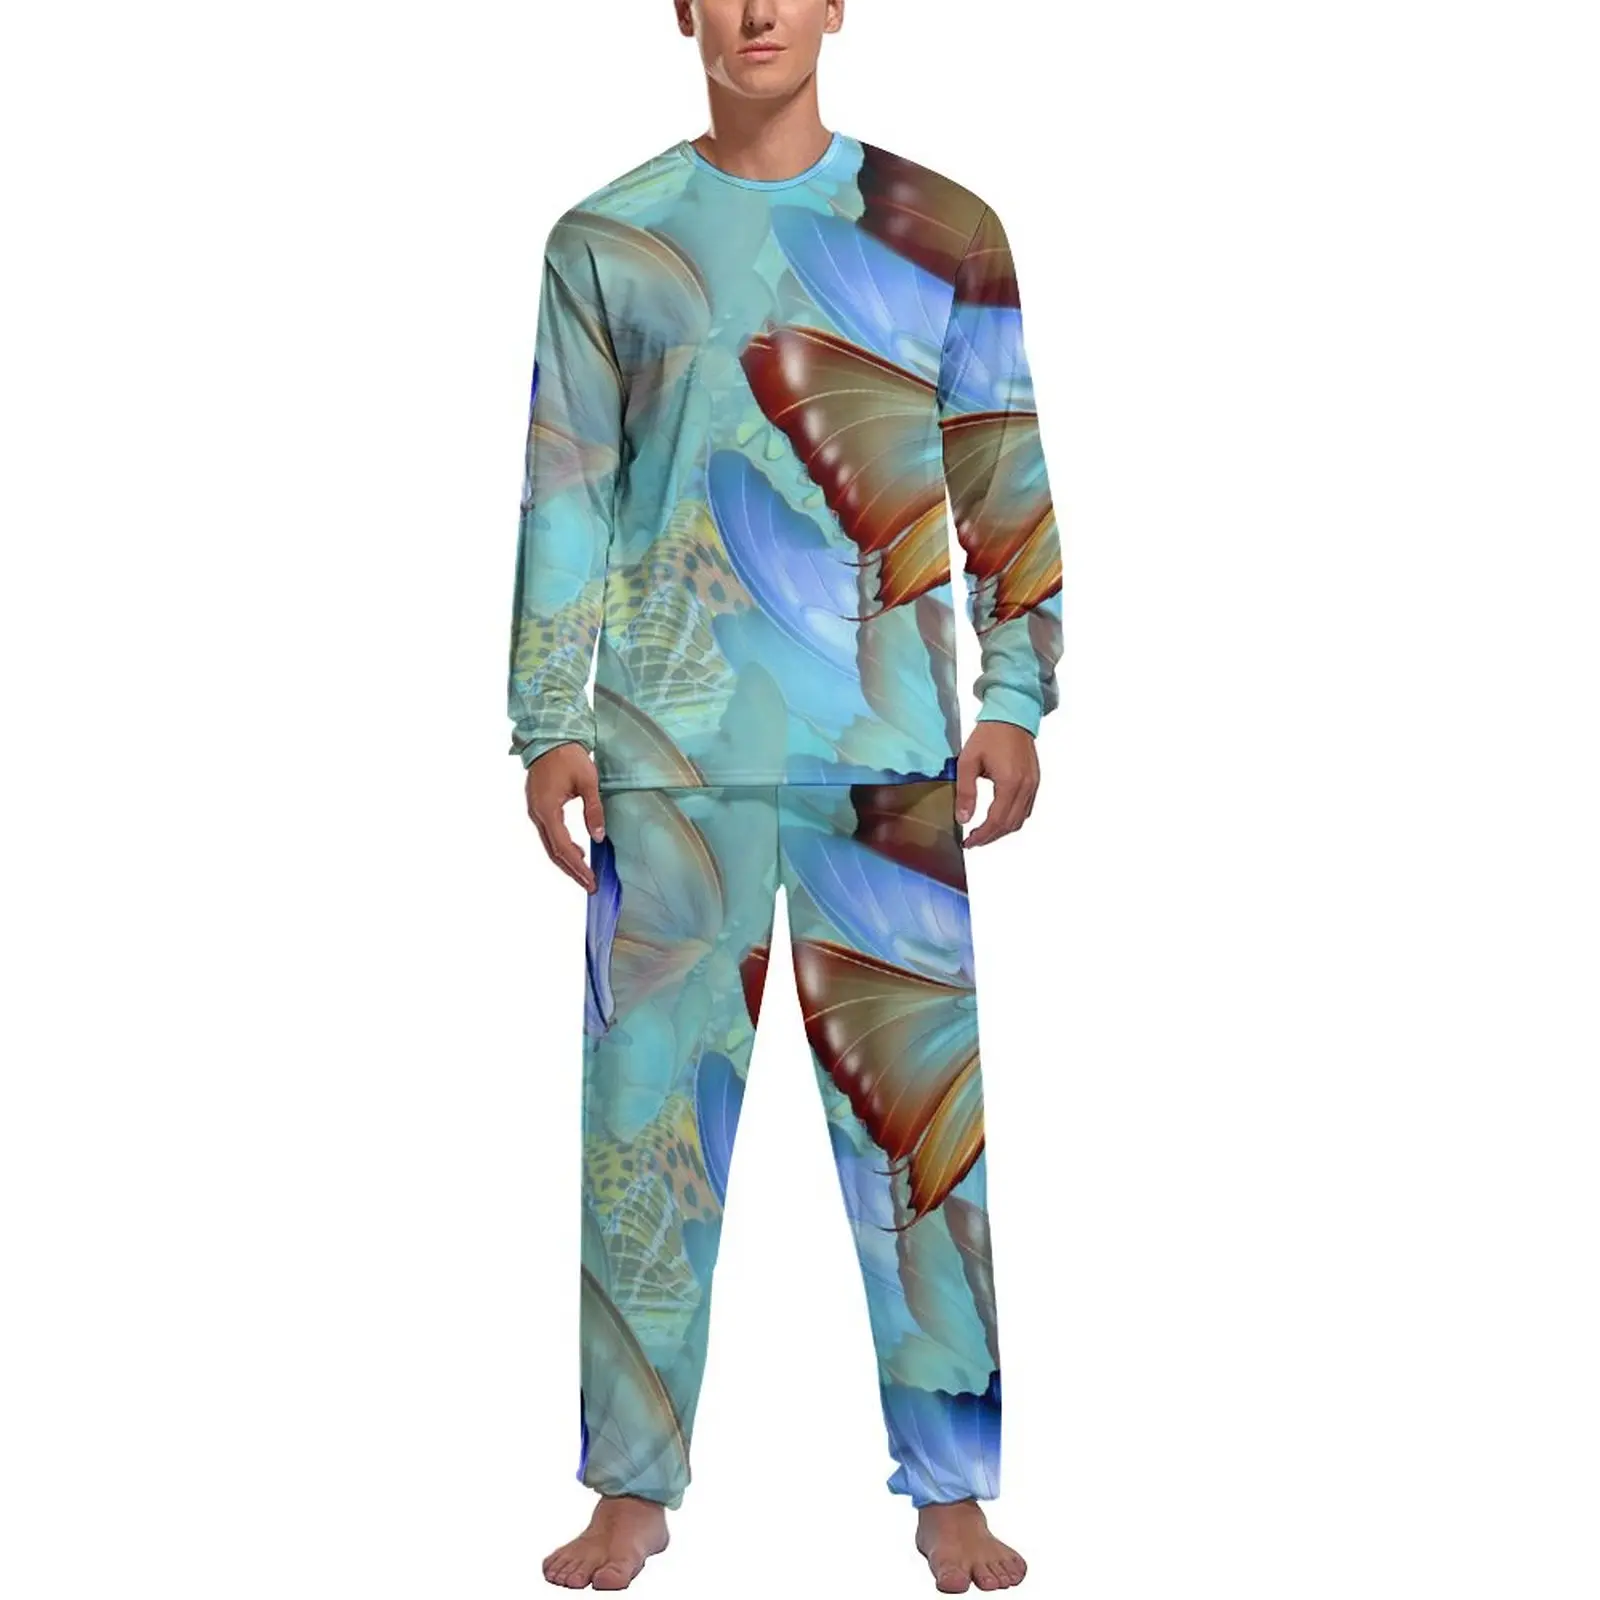 

Мужская одежда для сна с рисунком, осень, абстрактное искусство, 2 предмета, Симпатичные пижамные комплекты с графическим рисунком и длинным рукавом